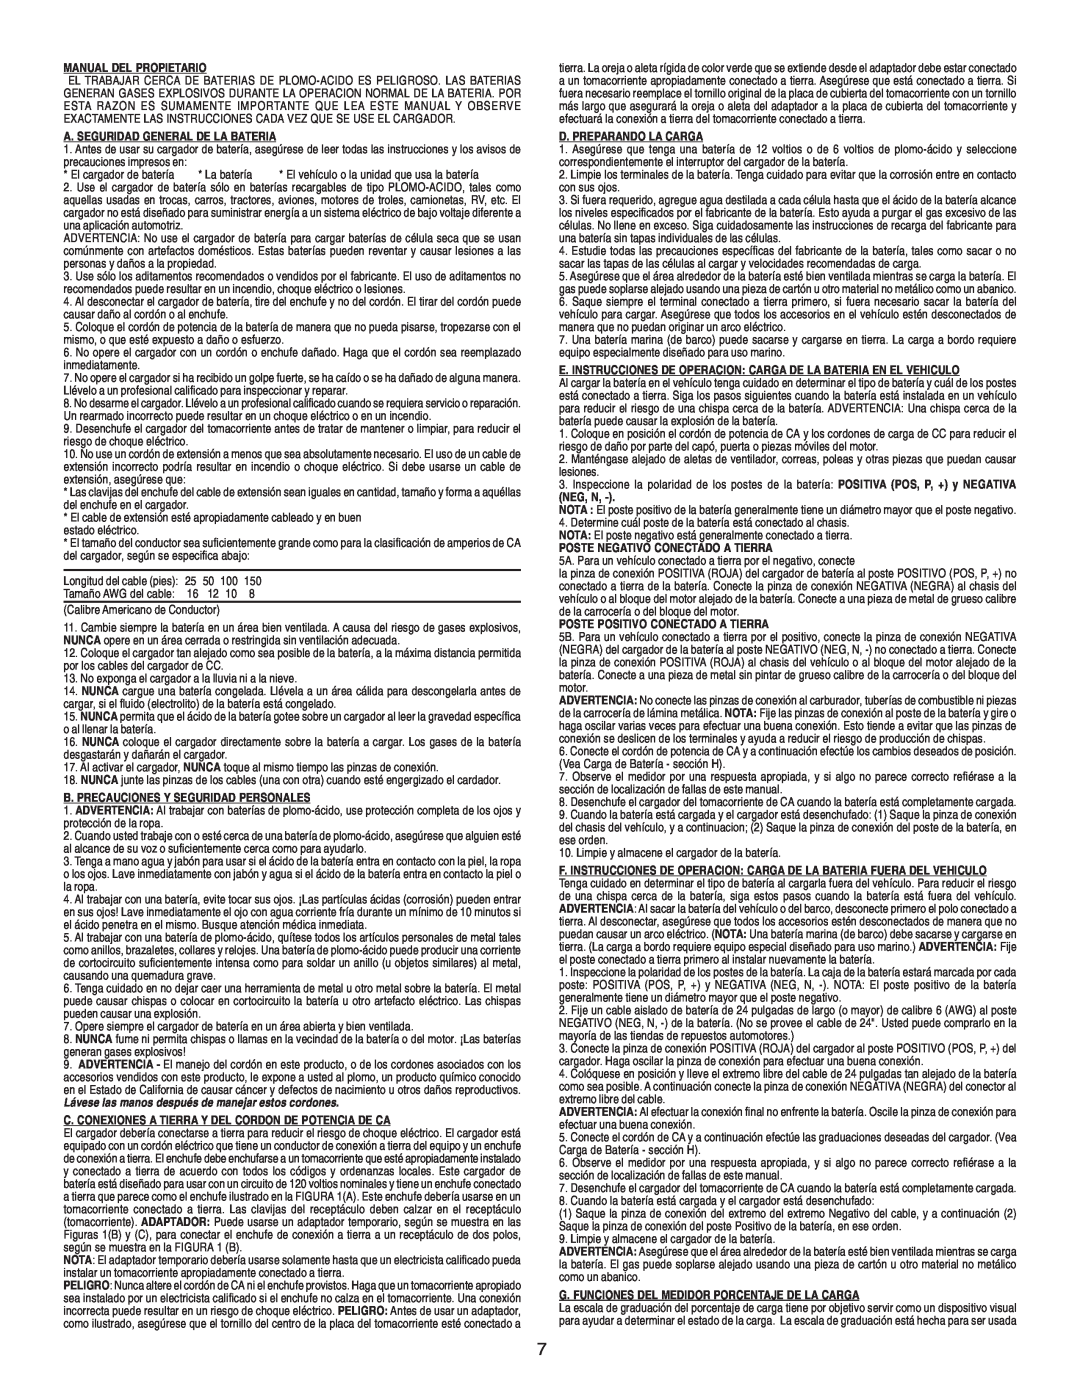 Schumacher SE-1250 Manual Del Propietario, A. Seguridad General De La Bateria, B. Precauciones Y Seguridad Personales 